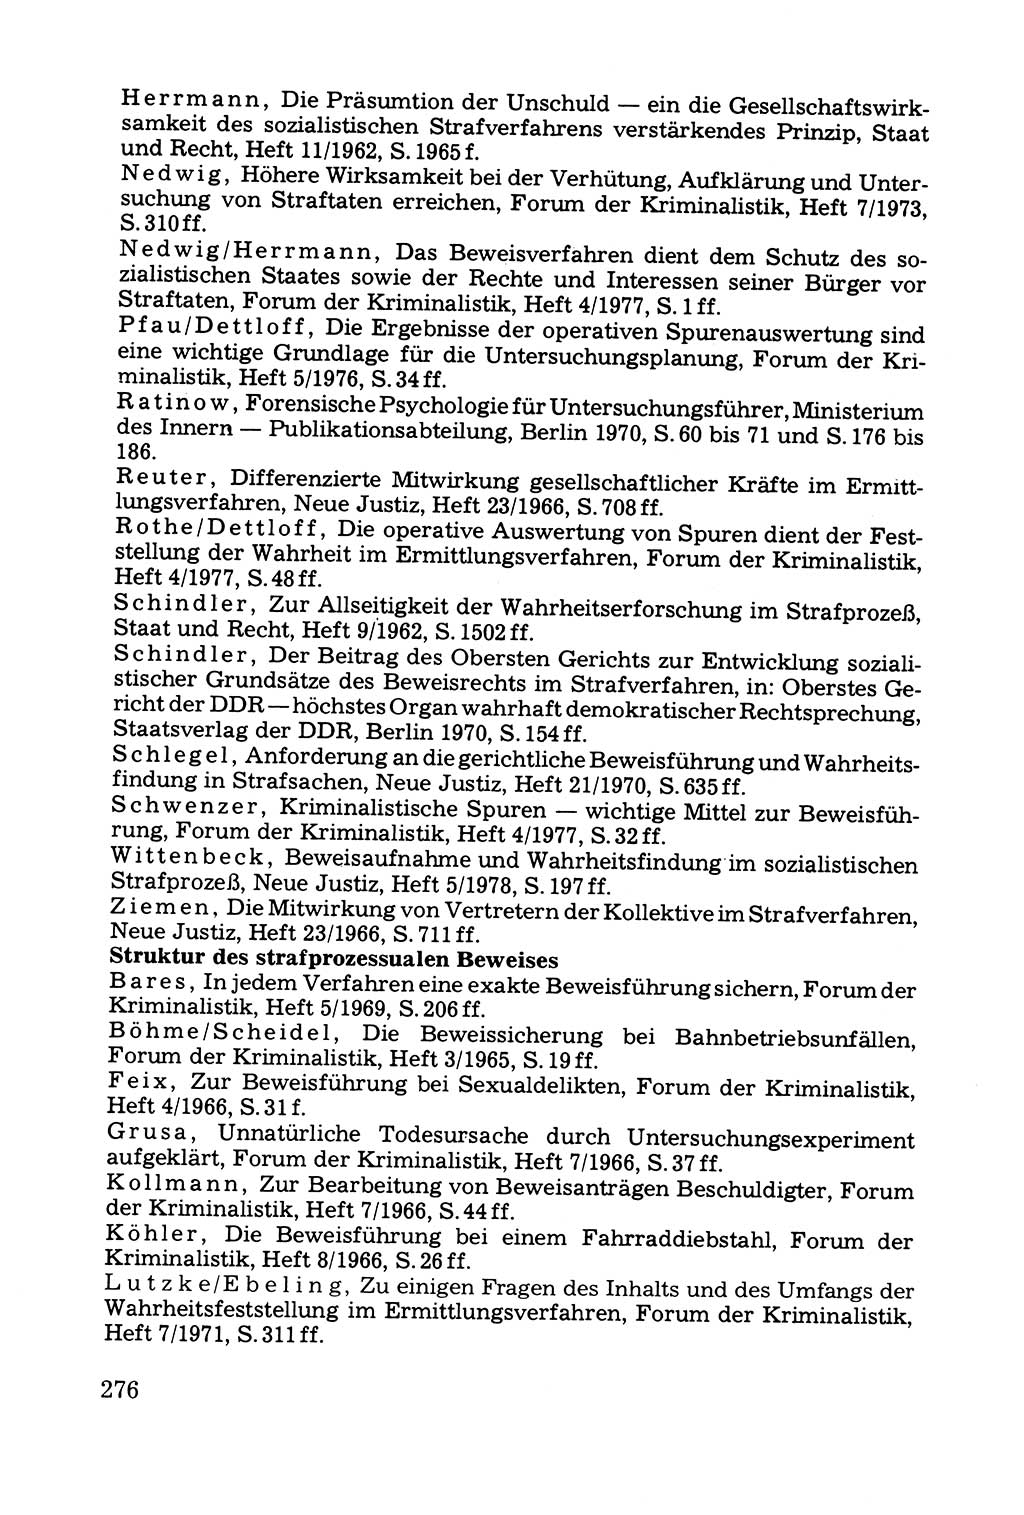 Grundfragen der Beweisführung im Ermittlungsverfahren [Deutsche Demokratische Republik (DDR)] 1980, Seite 276 (Bws.-Fhrg. EV DDR 1980, S. 276)